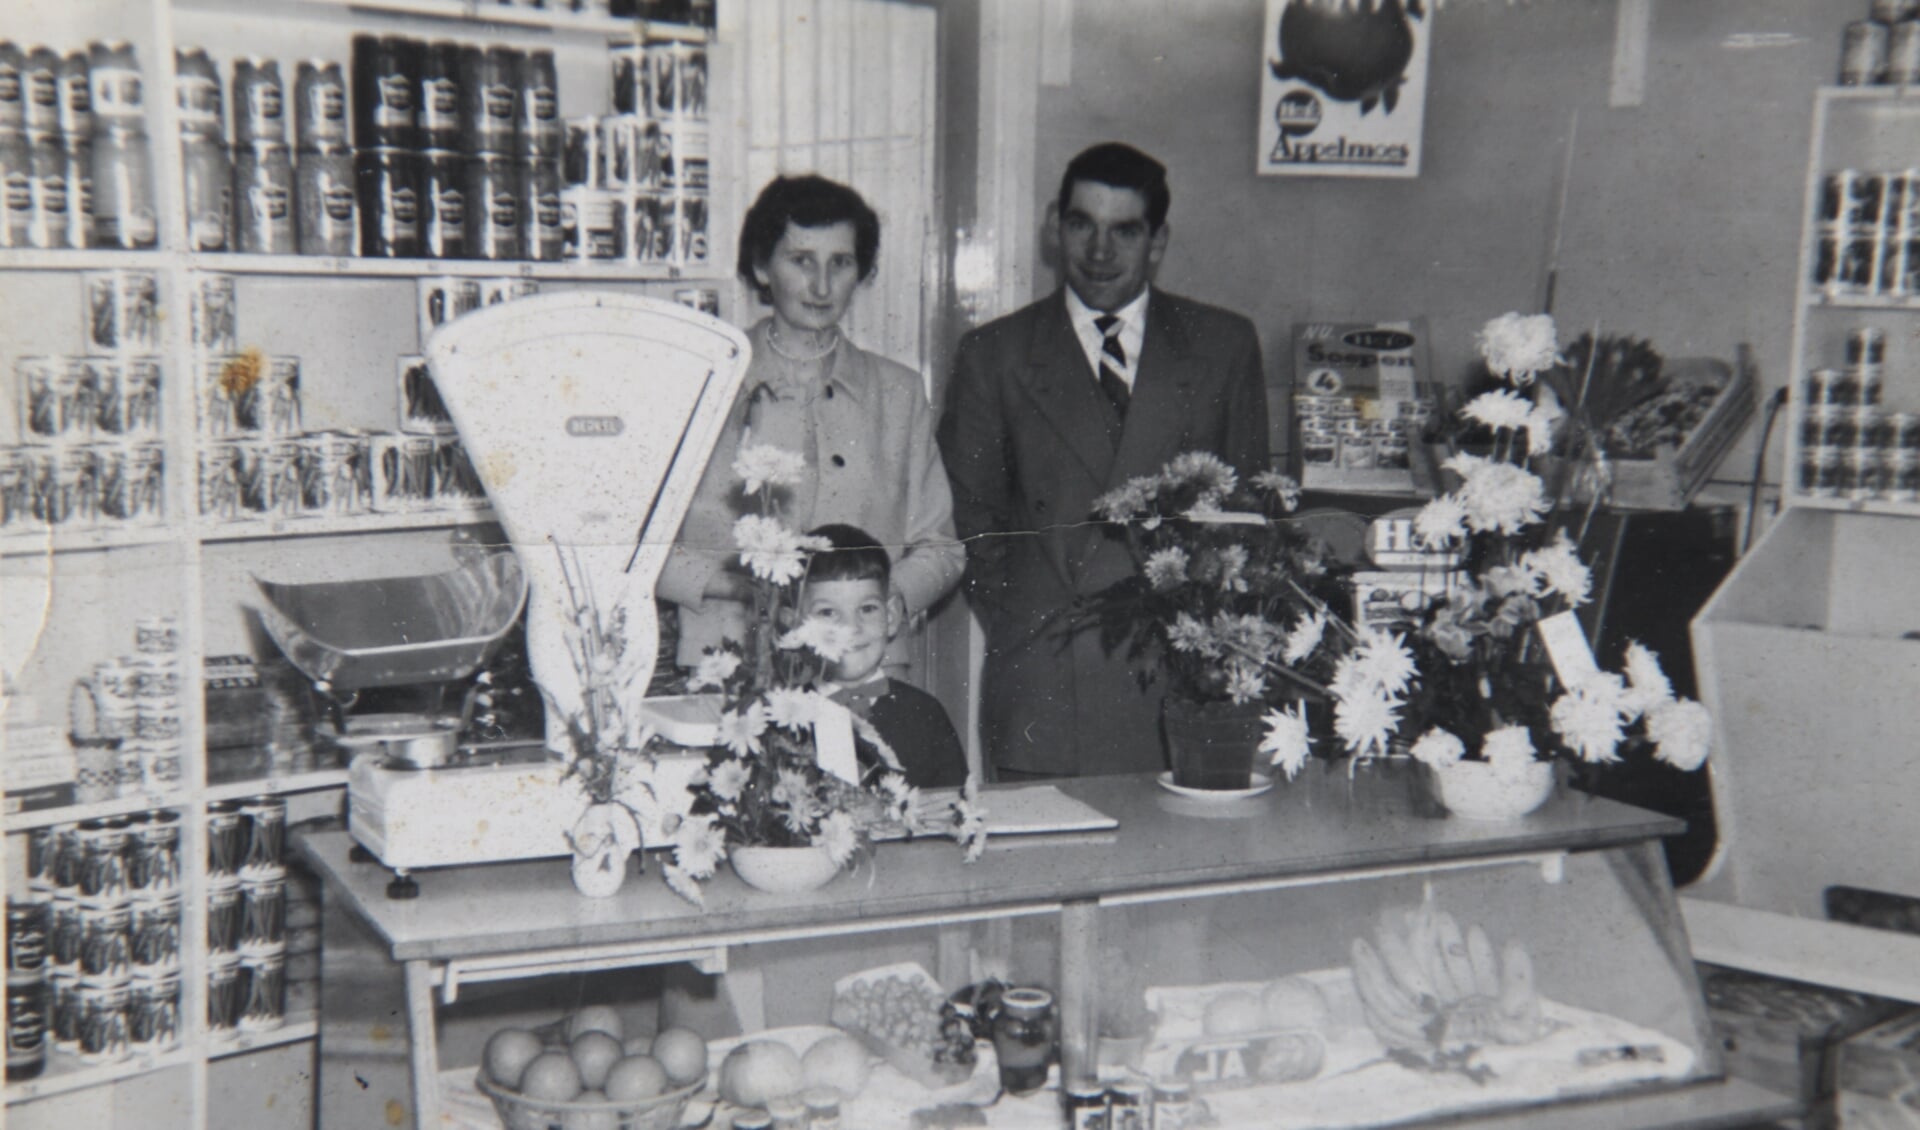 Het echtpaar Franken-Wittenbols in hun groentewinkeltje destijds aan de Dorpsstraat.